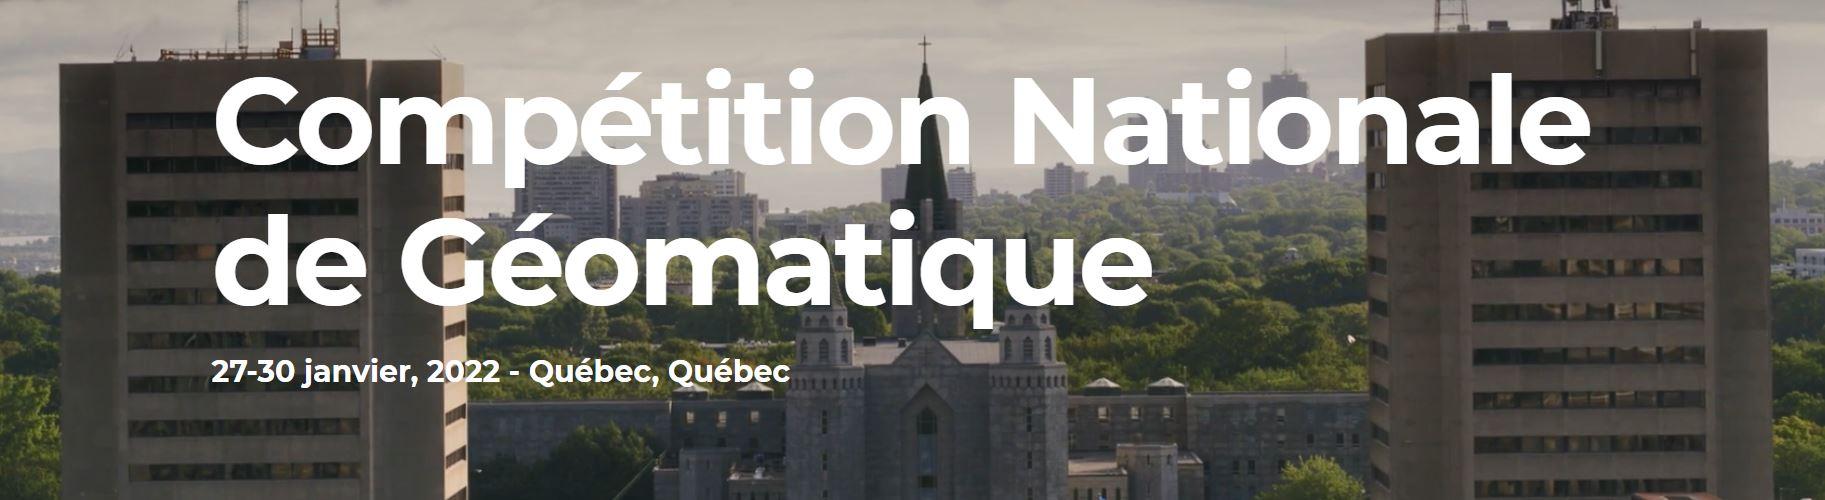 Compétition nationale de géomatique - Université Laval